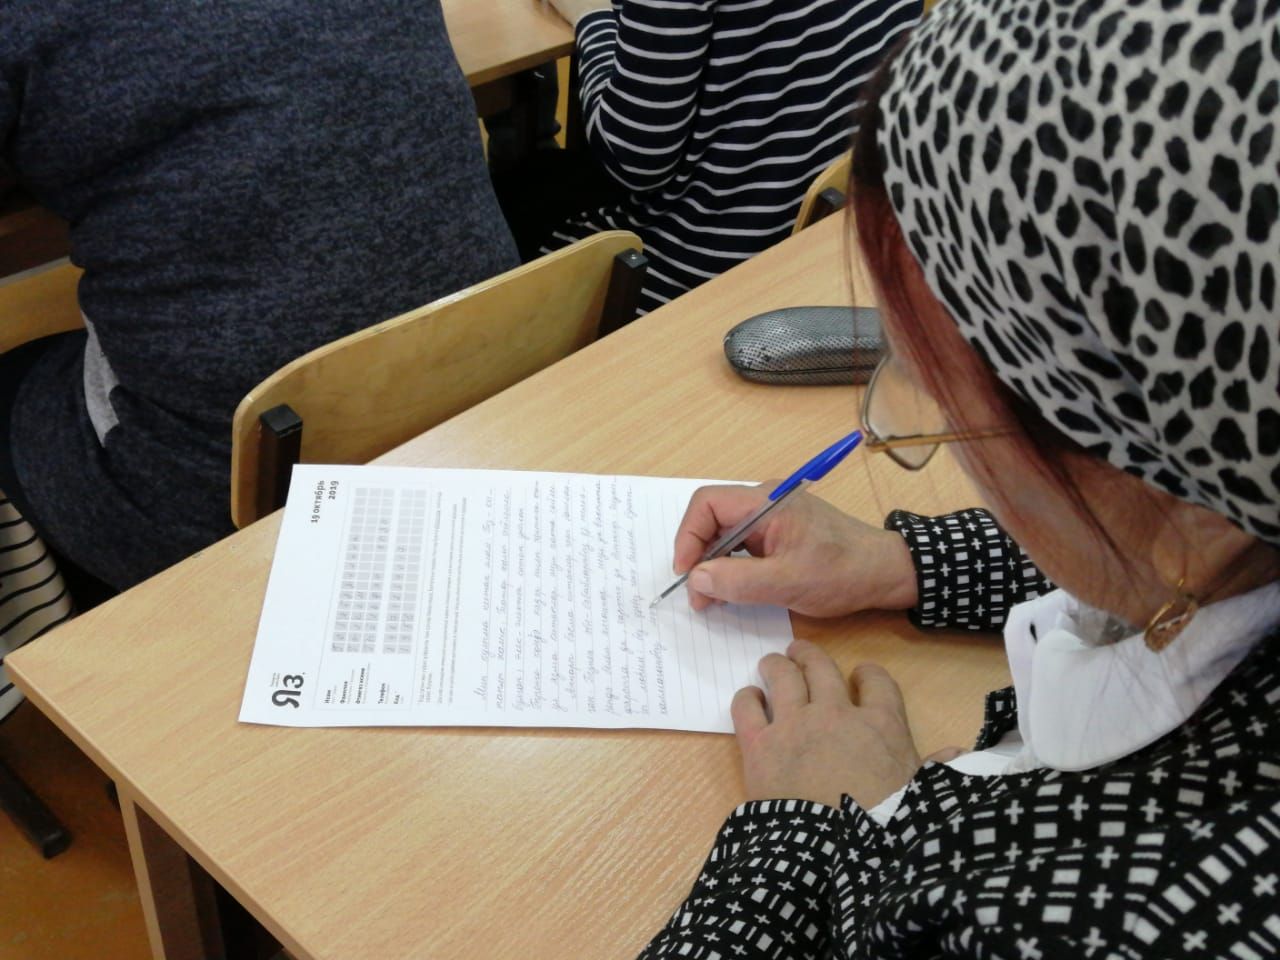 В лицее-интернате Буинска диктант на татарском языке писали 100 человек (+фото)